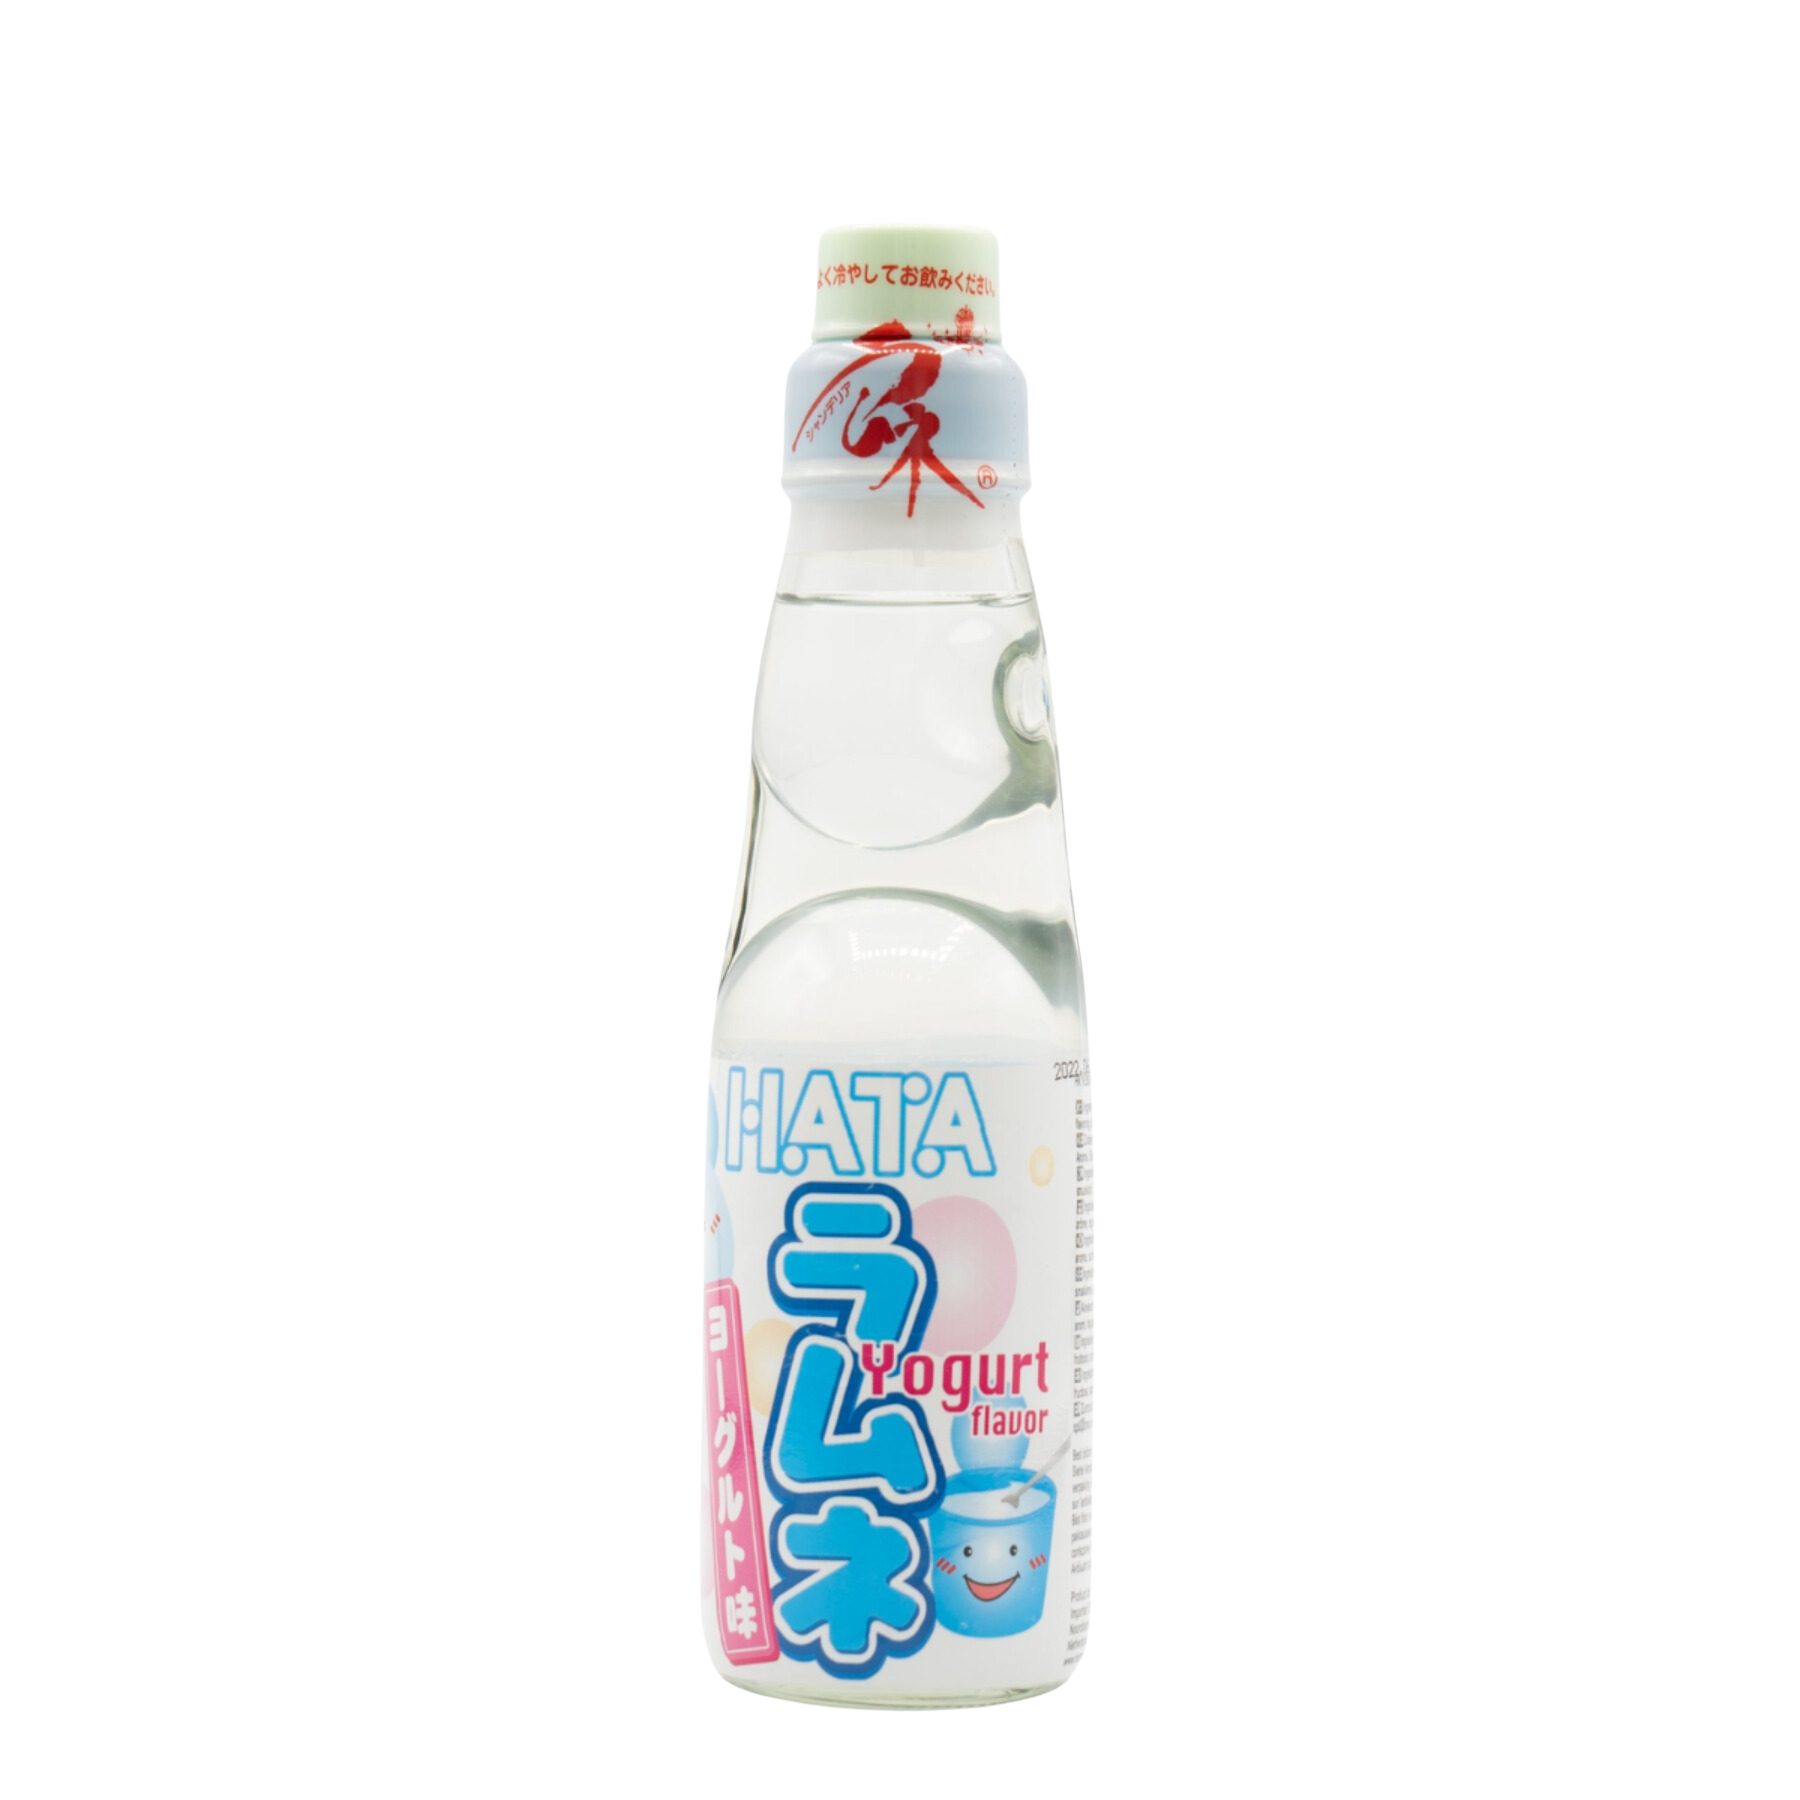 Hataose Ramune Yogurt